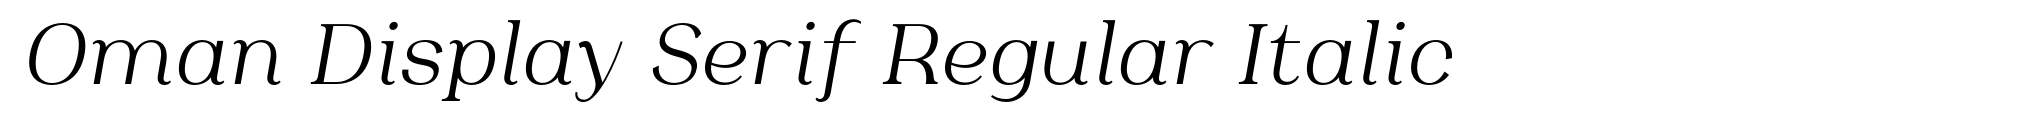 Oman Display Serif Regular Italic image